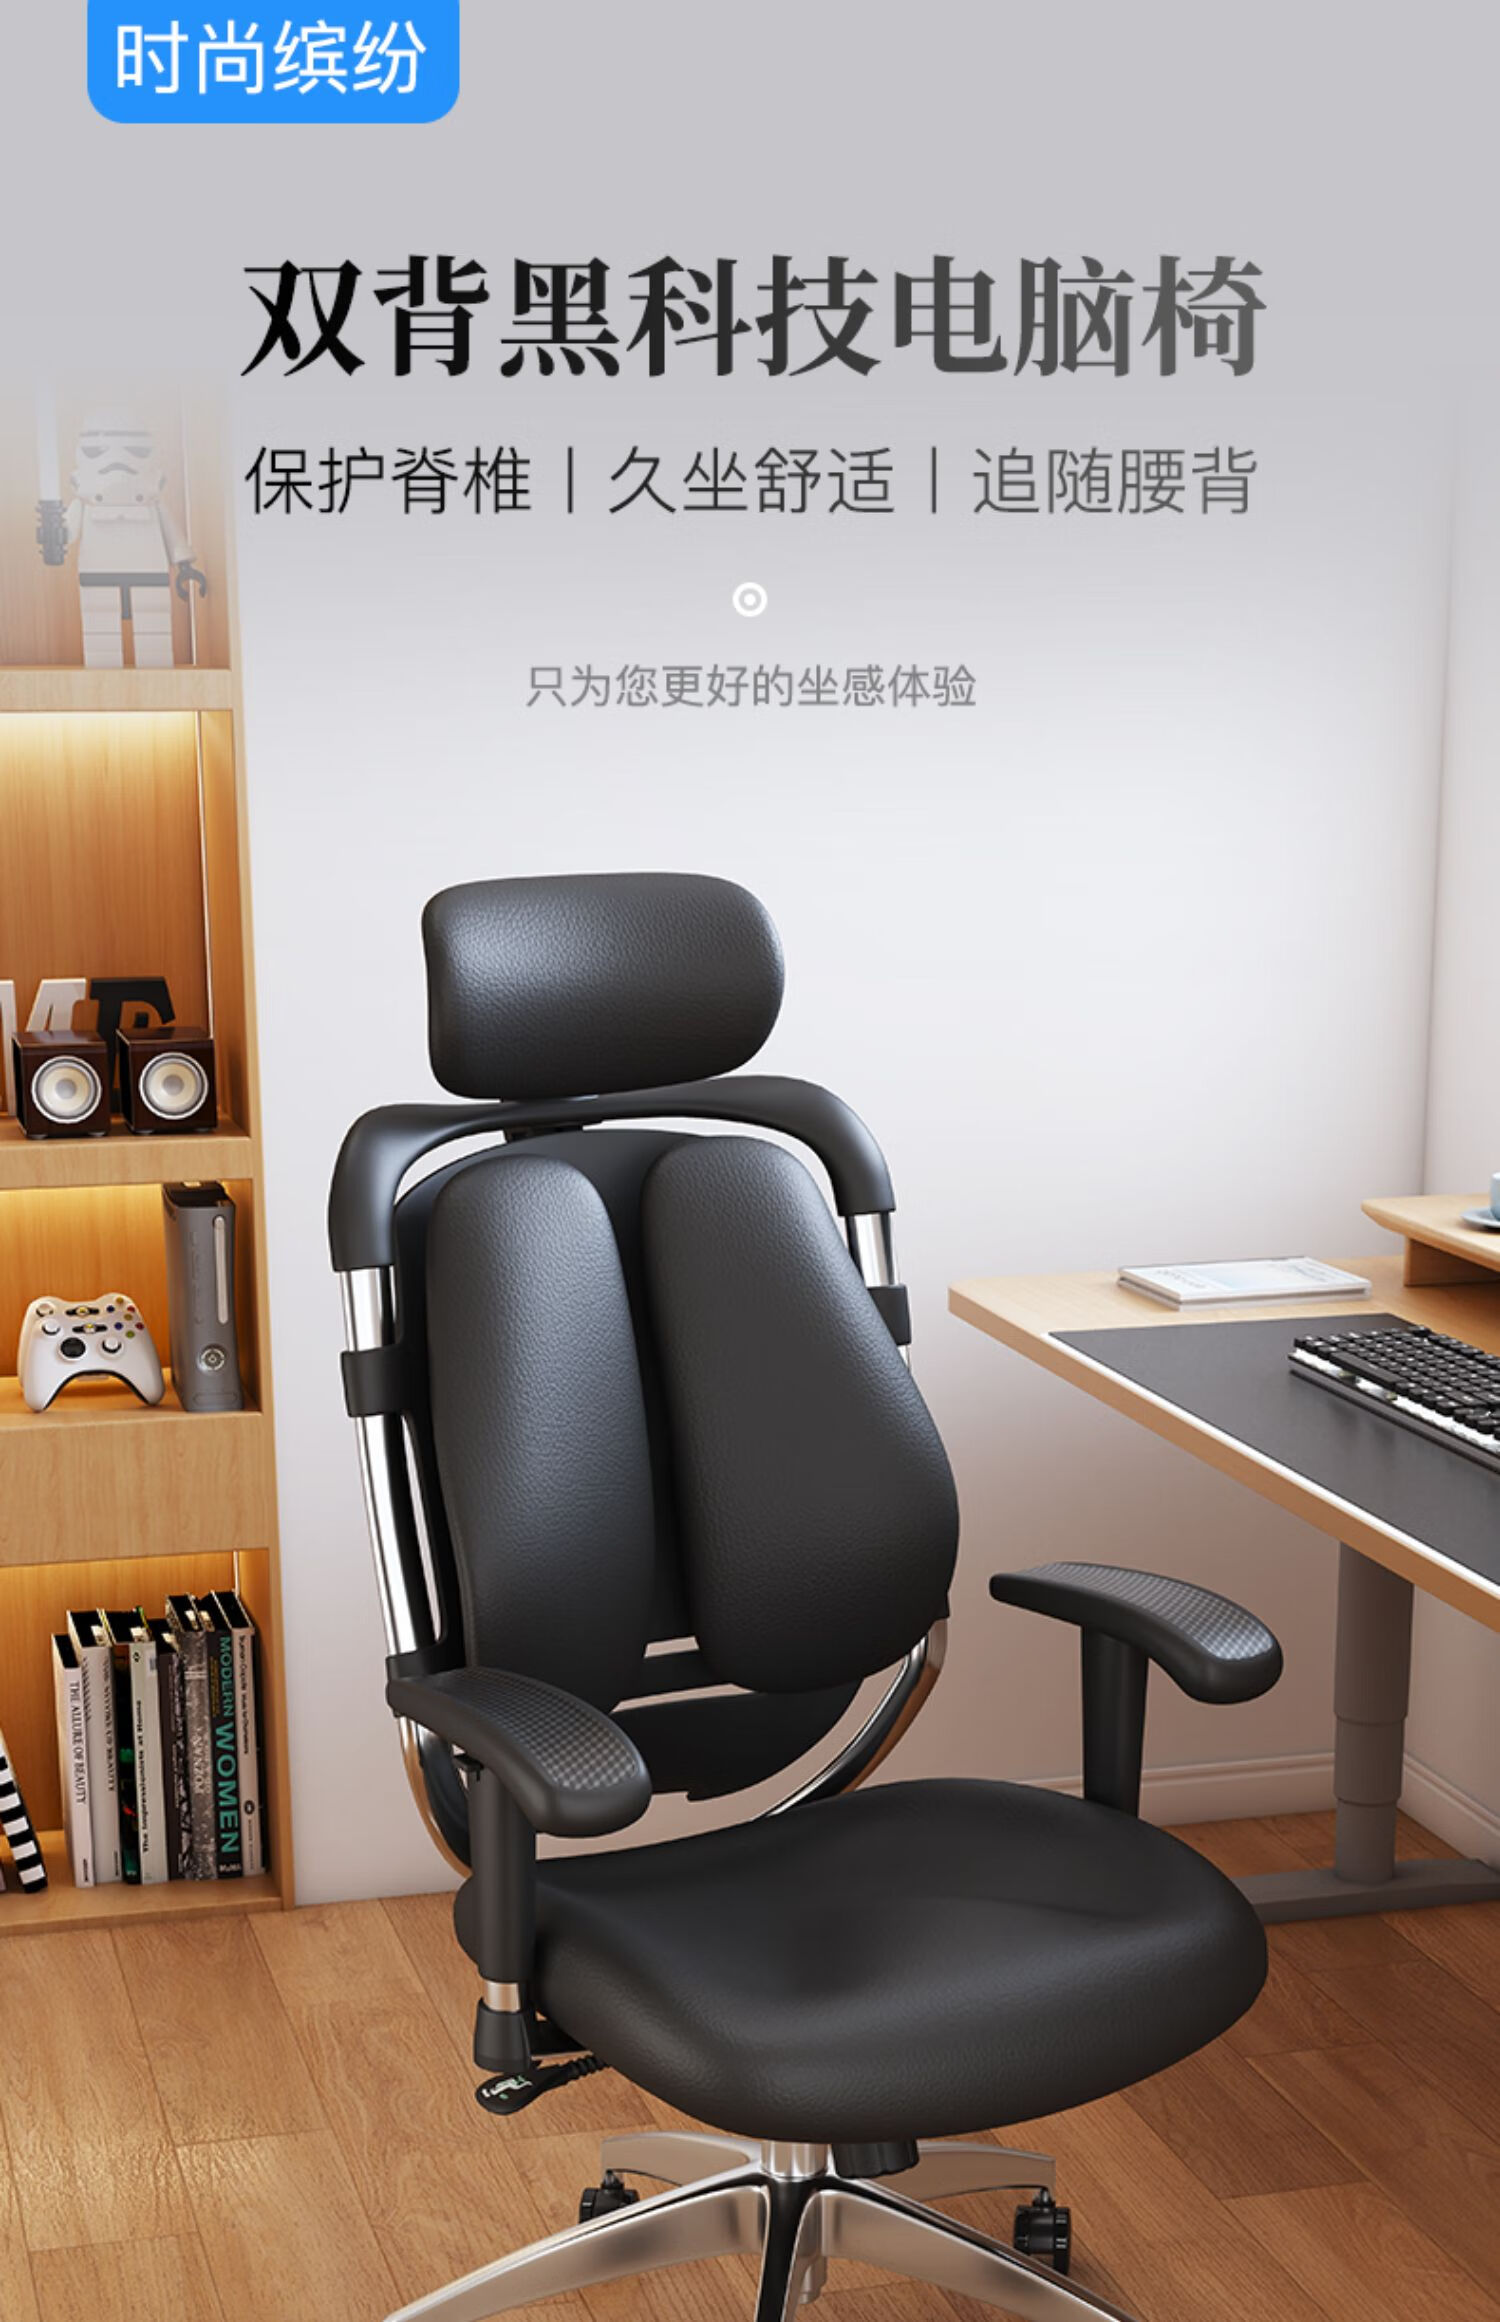 轻奢品牌基梵迪高档人体工学椅双背坐椅电竞椅升降座椅电脑椅家用舒适